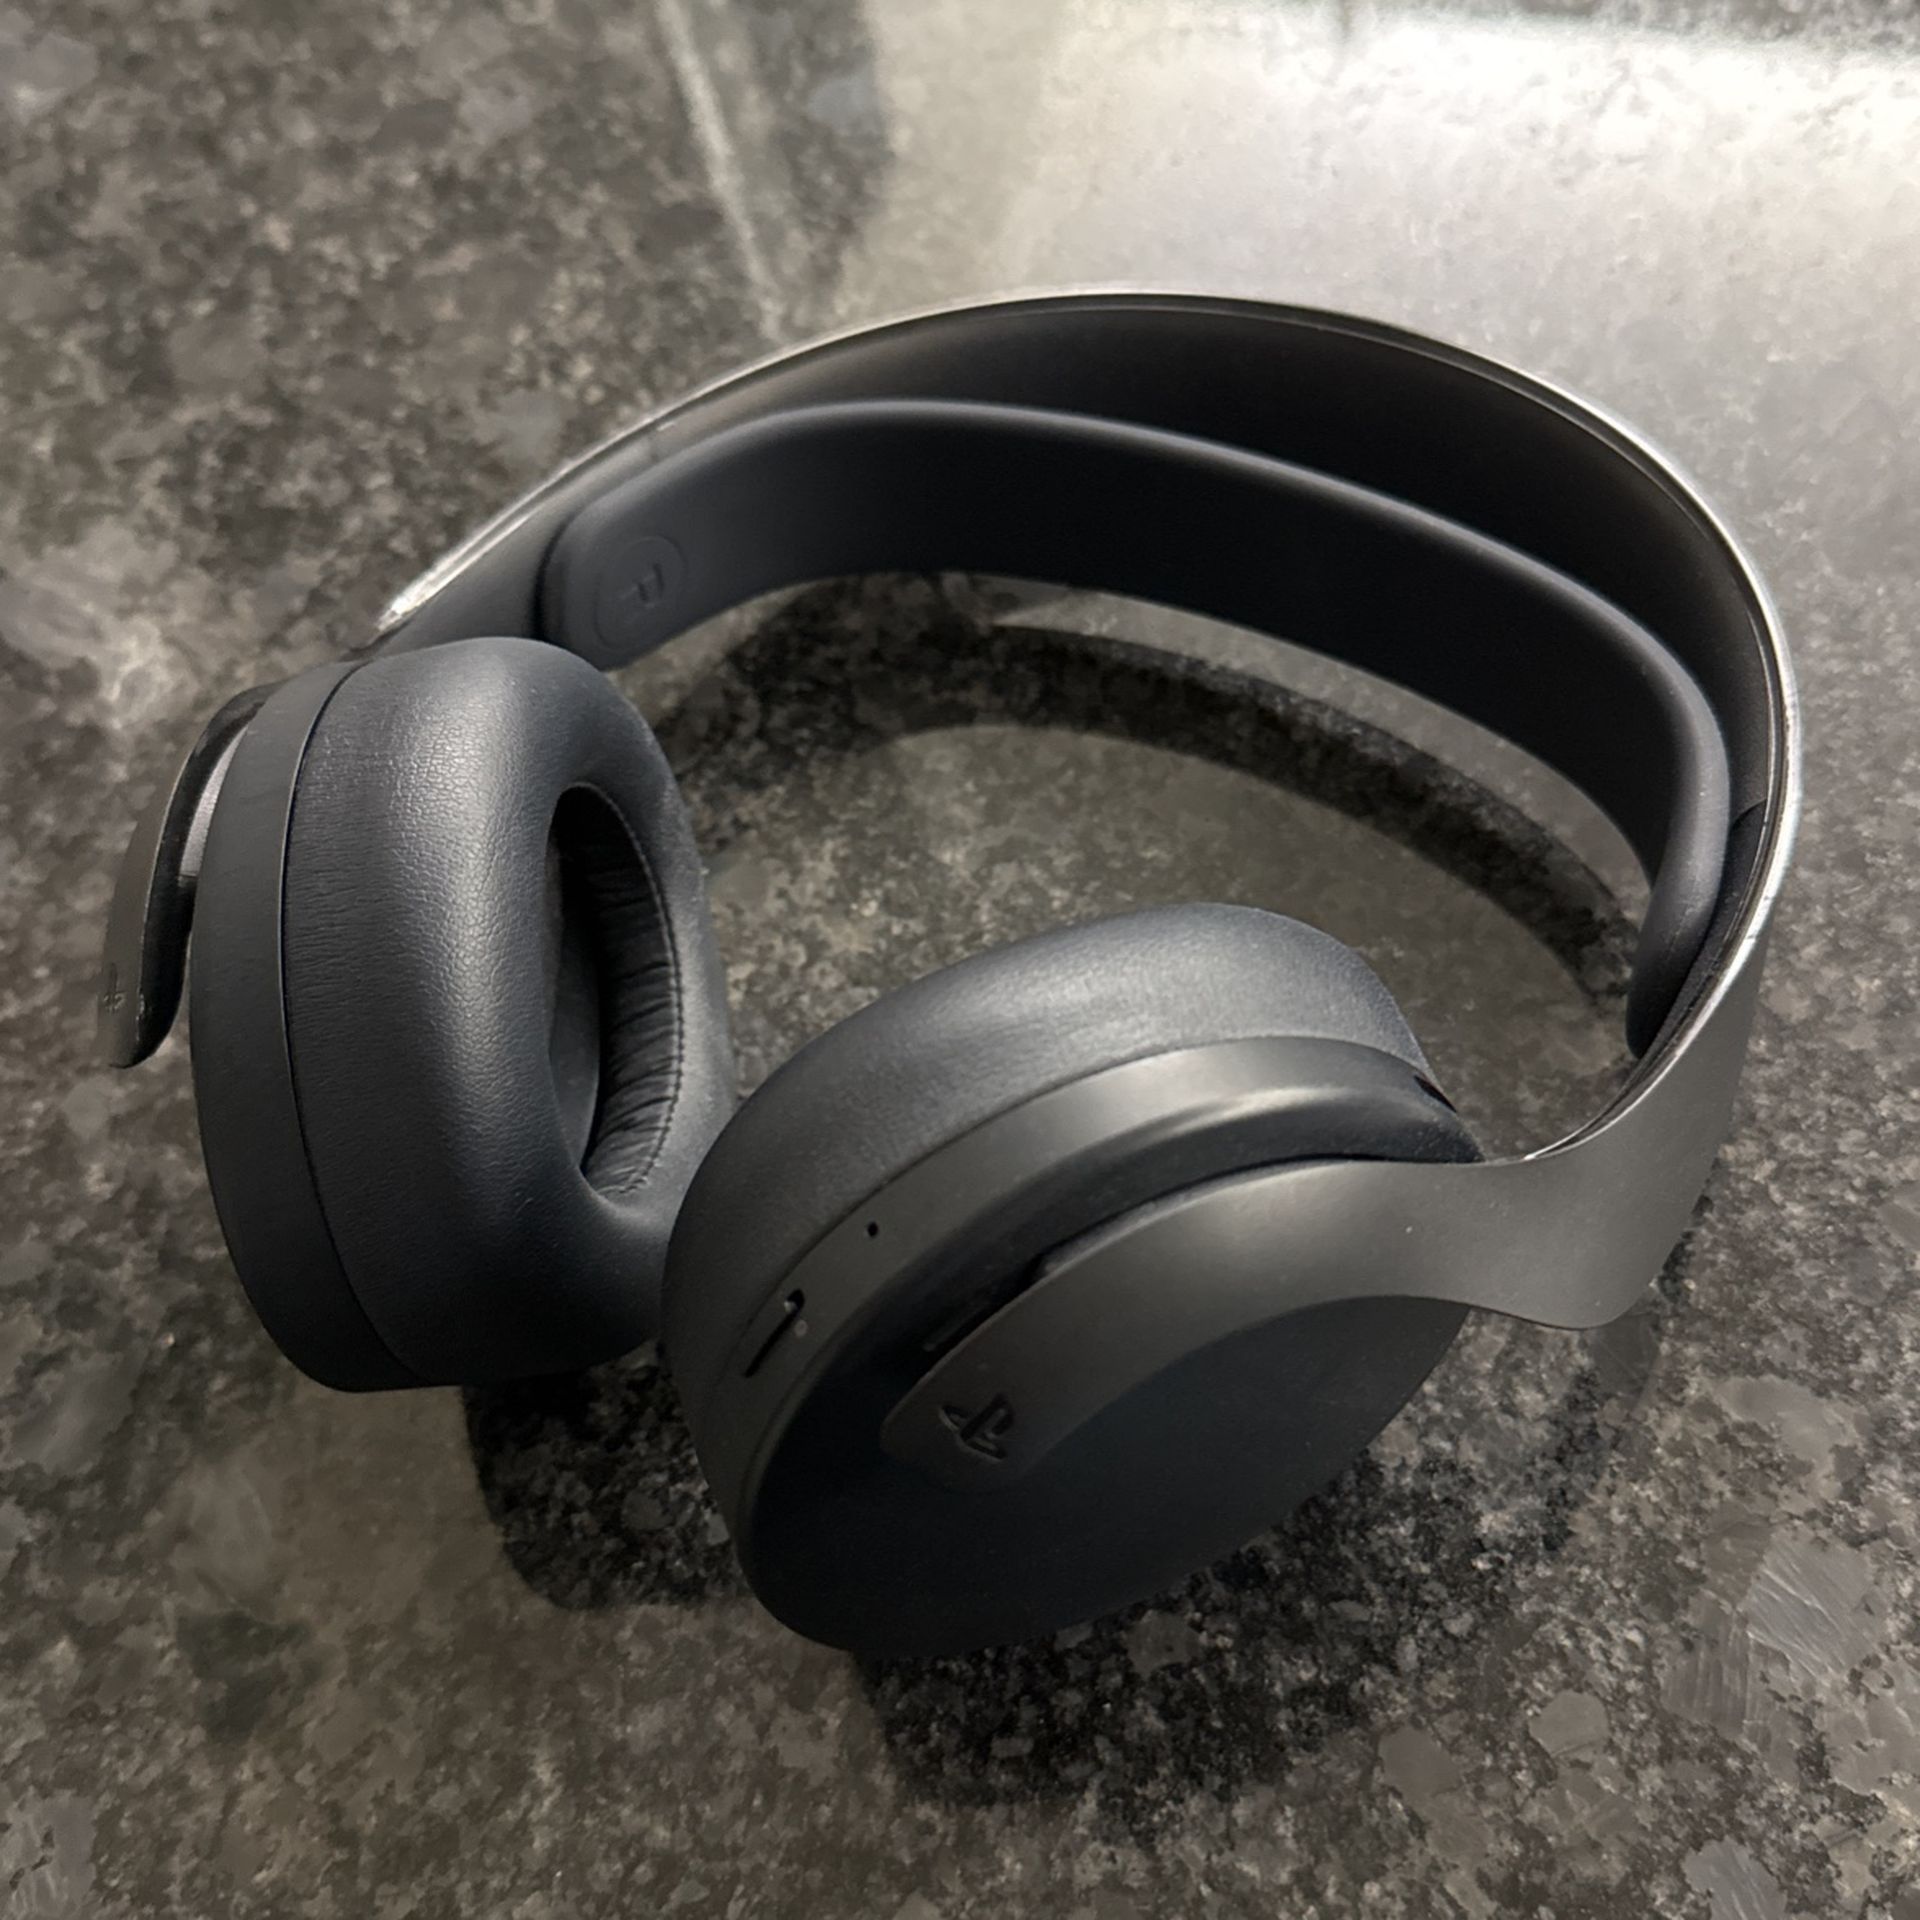 PS5 Pulse 3d Headphones